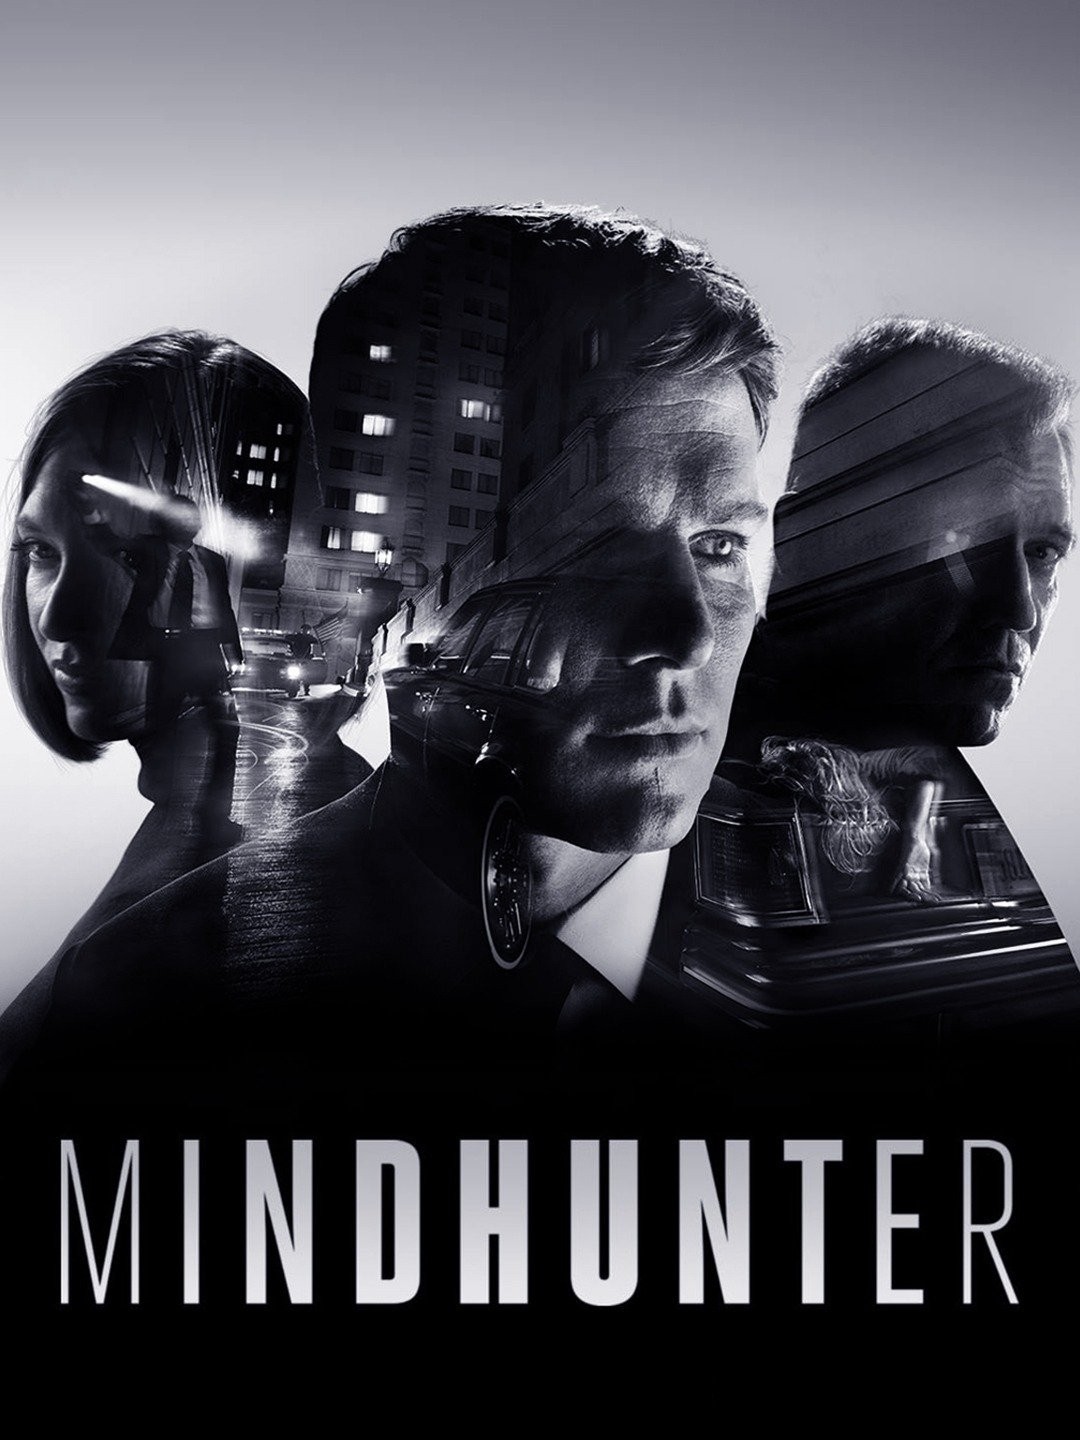 Criminal Minds, Mindhunter: criminal profiling doesn't work - Vox